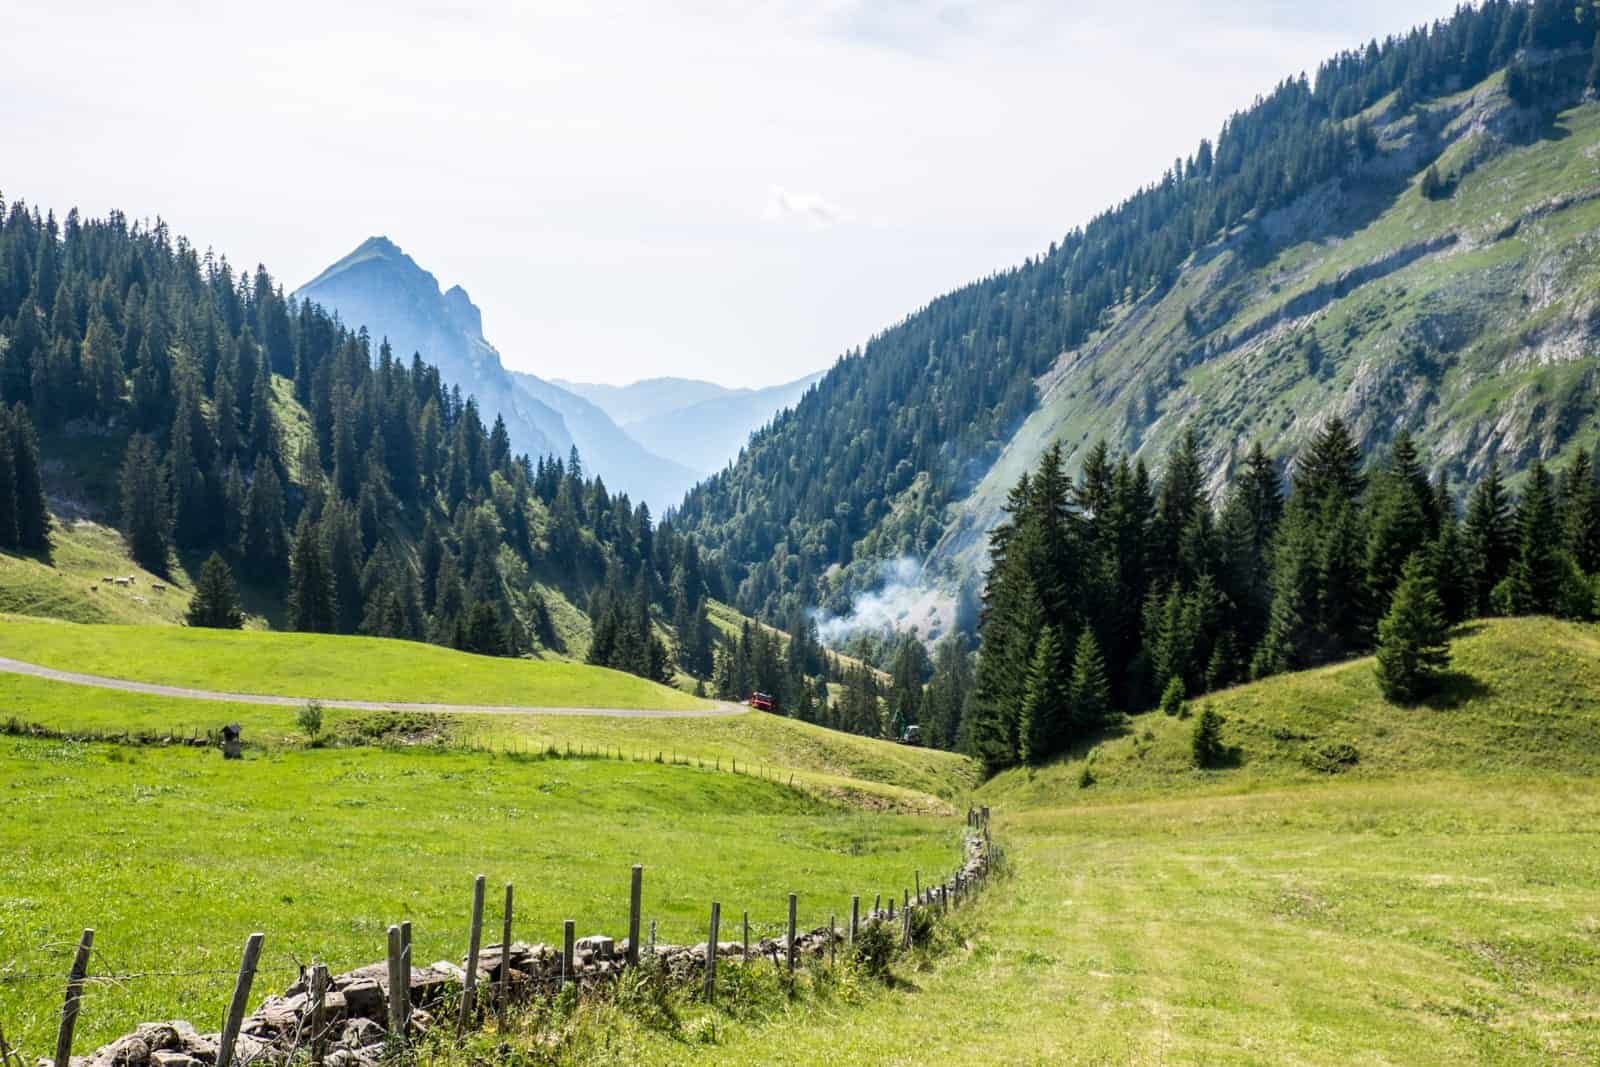 Valley views of Vorarlberg, Austria hiking in Bregenzerwald